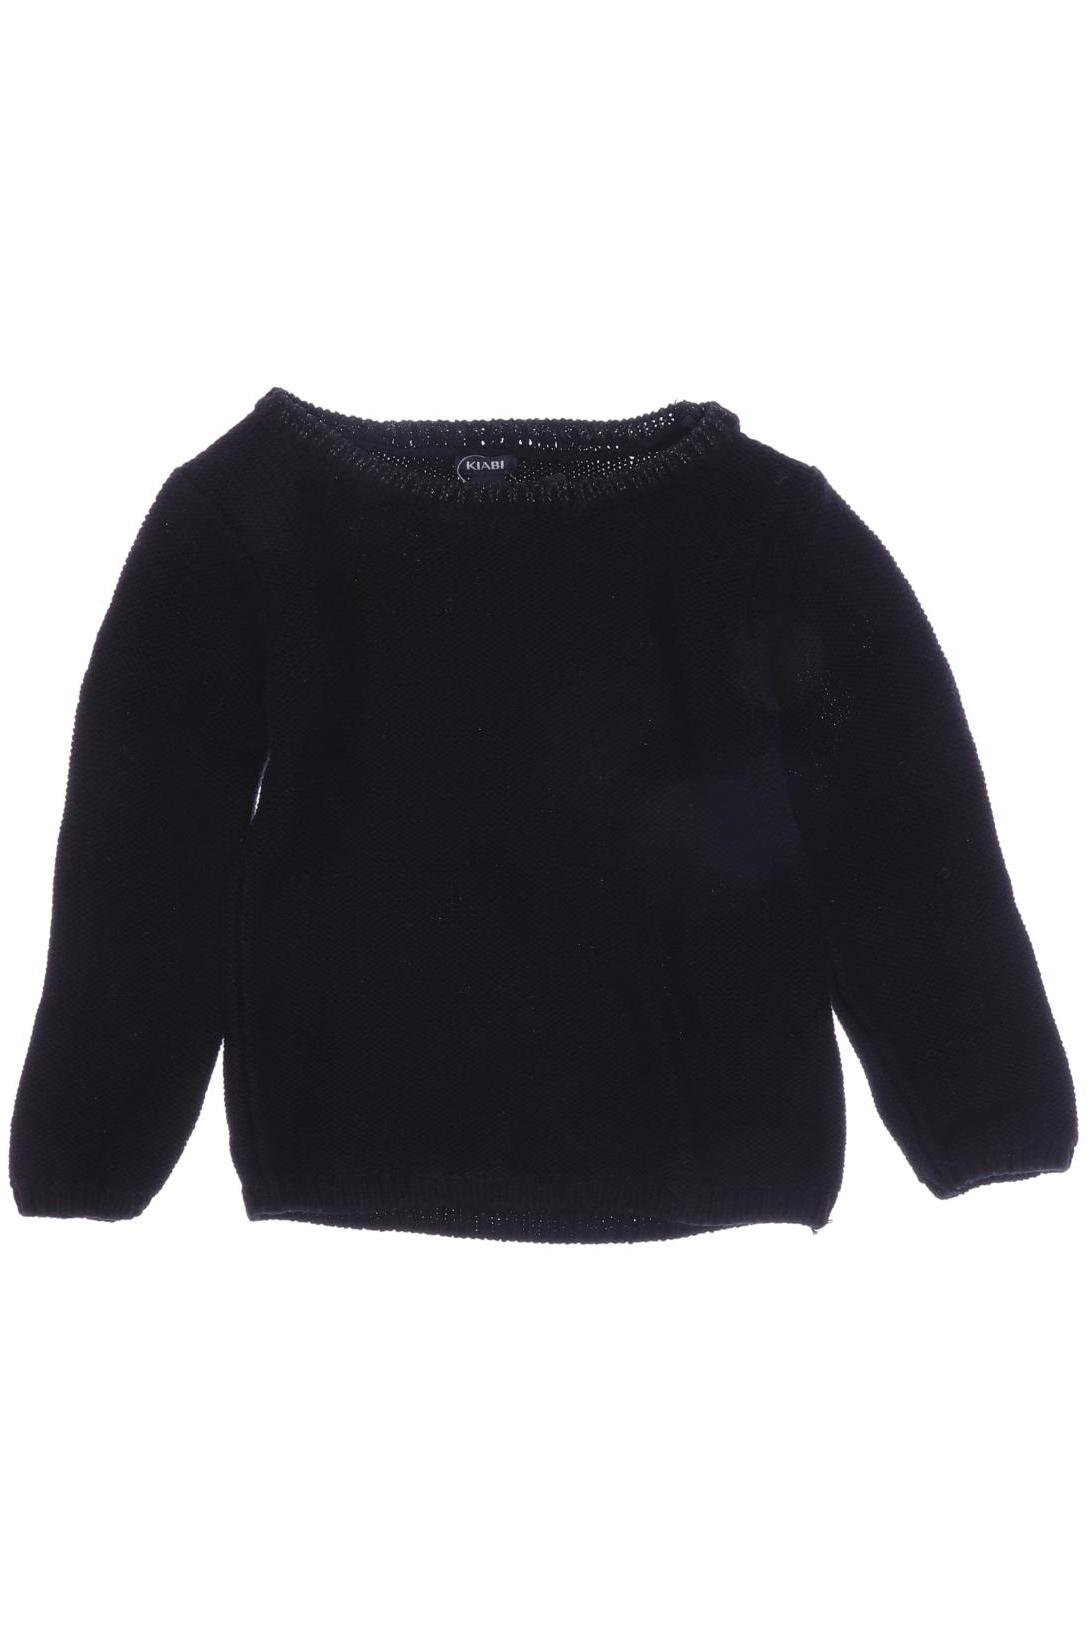 Kiabi Damen Pullover, schwarz, Gr. 86 von Kiabi